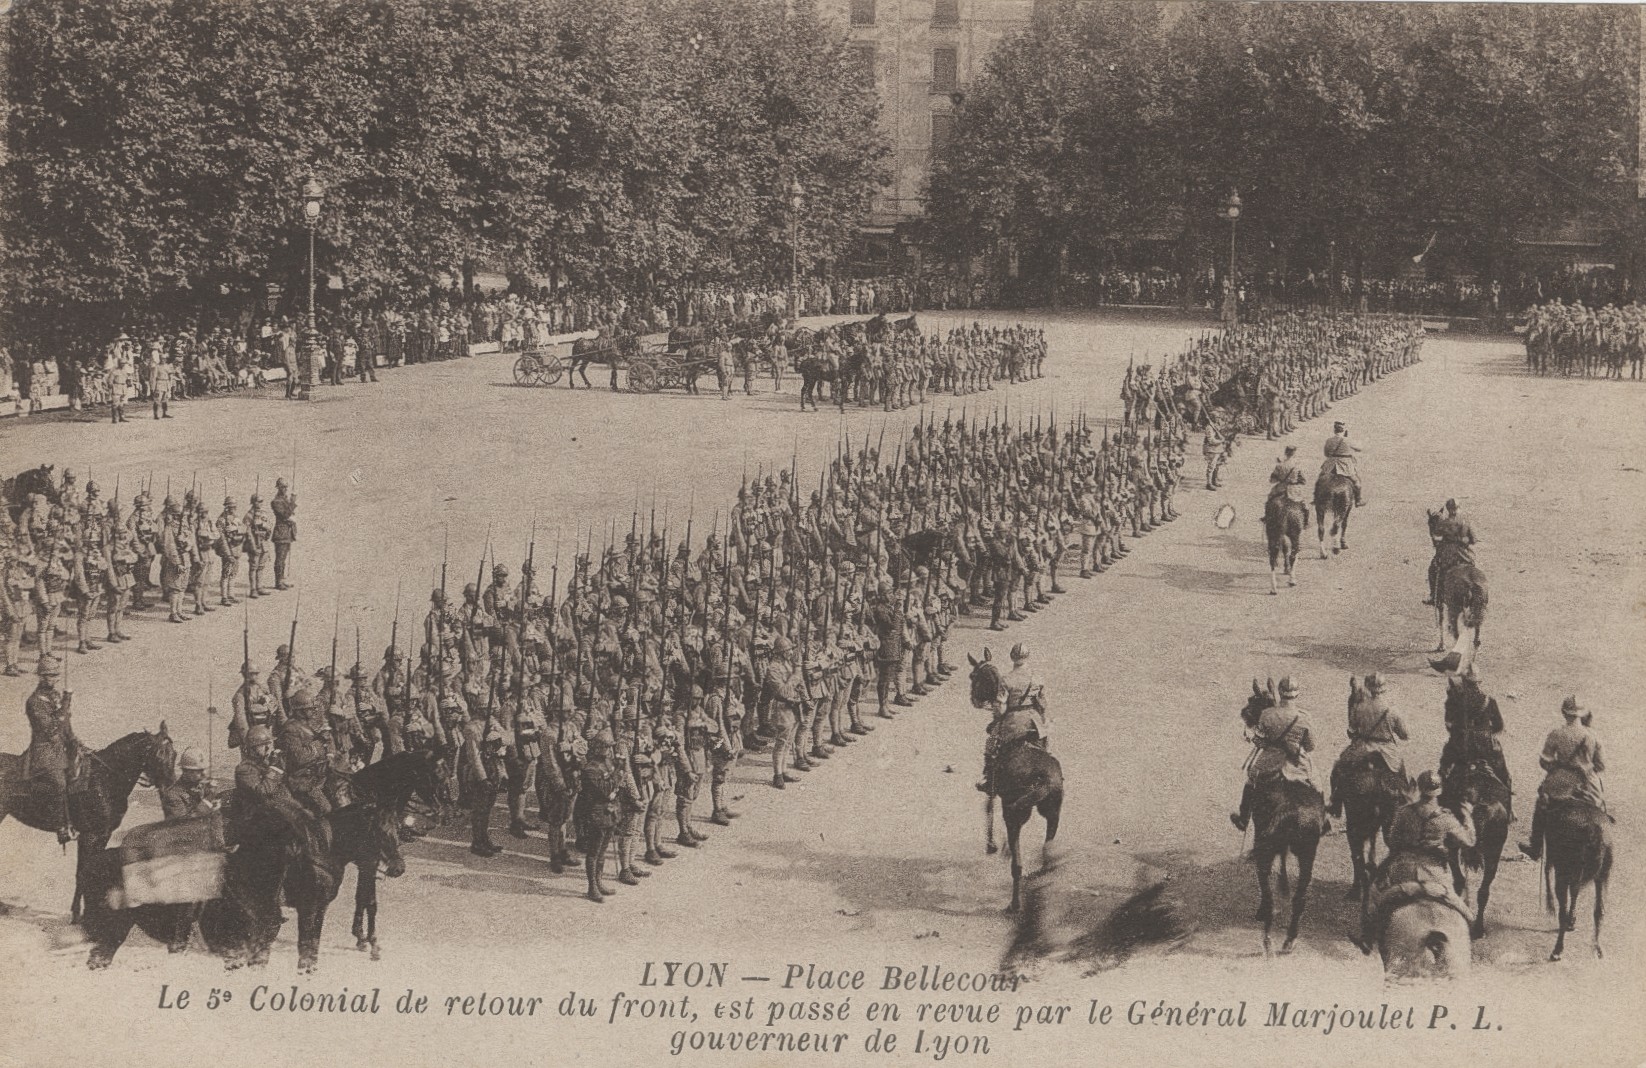 Revue militaire du 5e colonial place Bellecour : carte postale NB (1914-1918, cote : 4FI/4824)